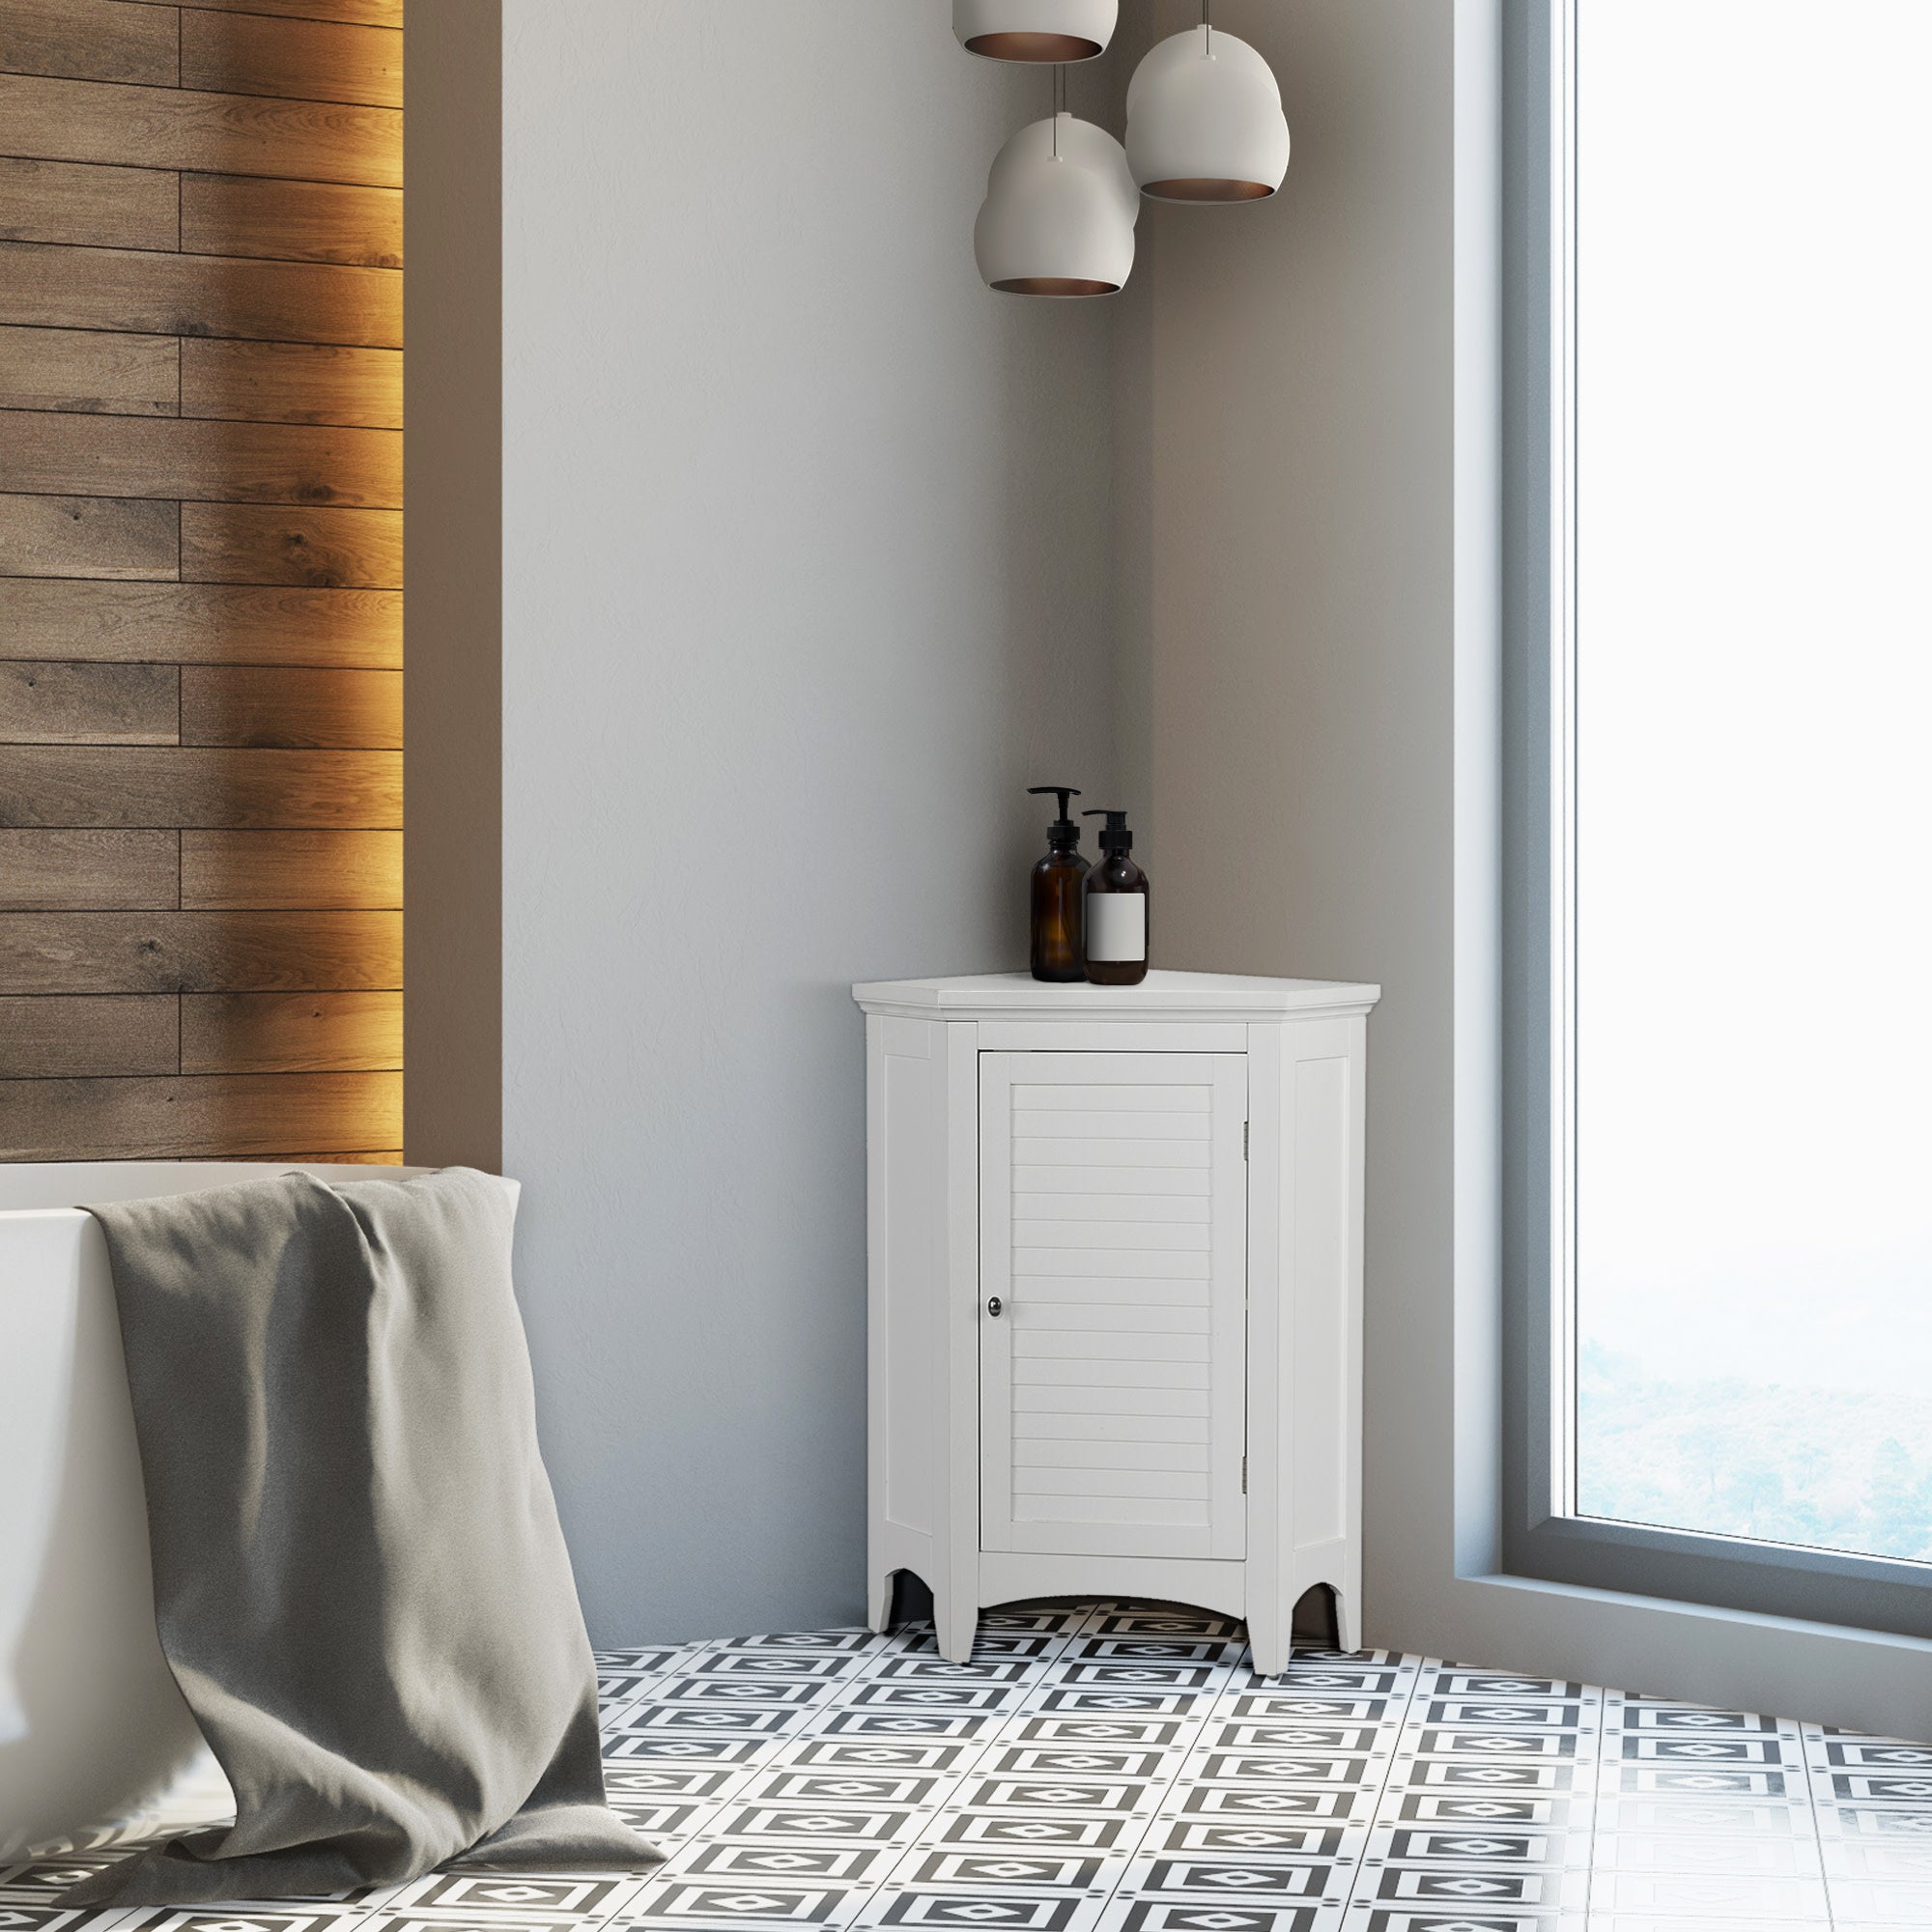 Teamson Home Glancy Wooden Corner Floor Cabinet with Shutter Door, White